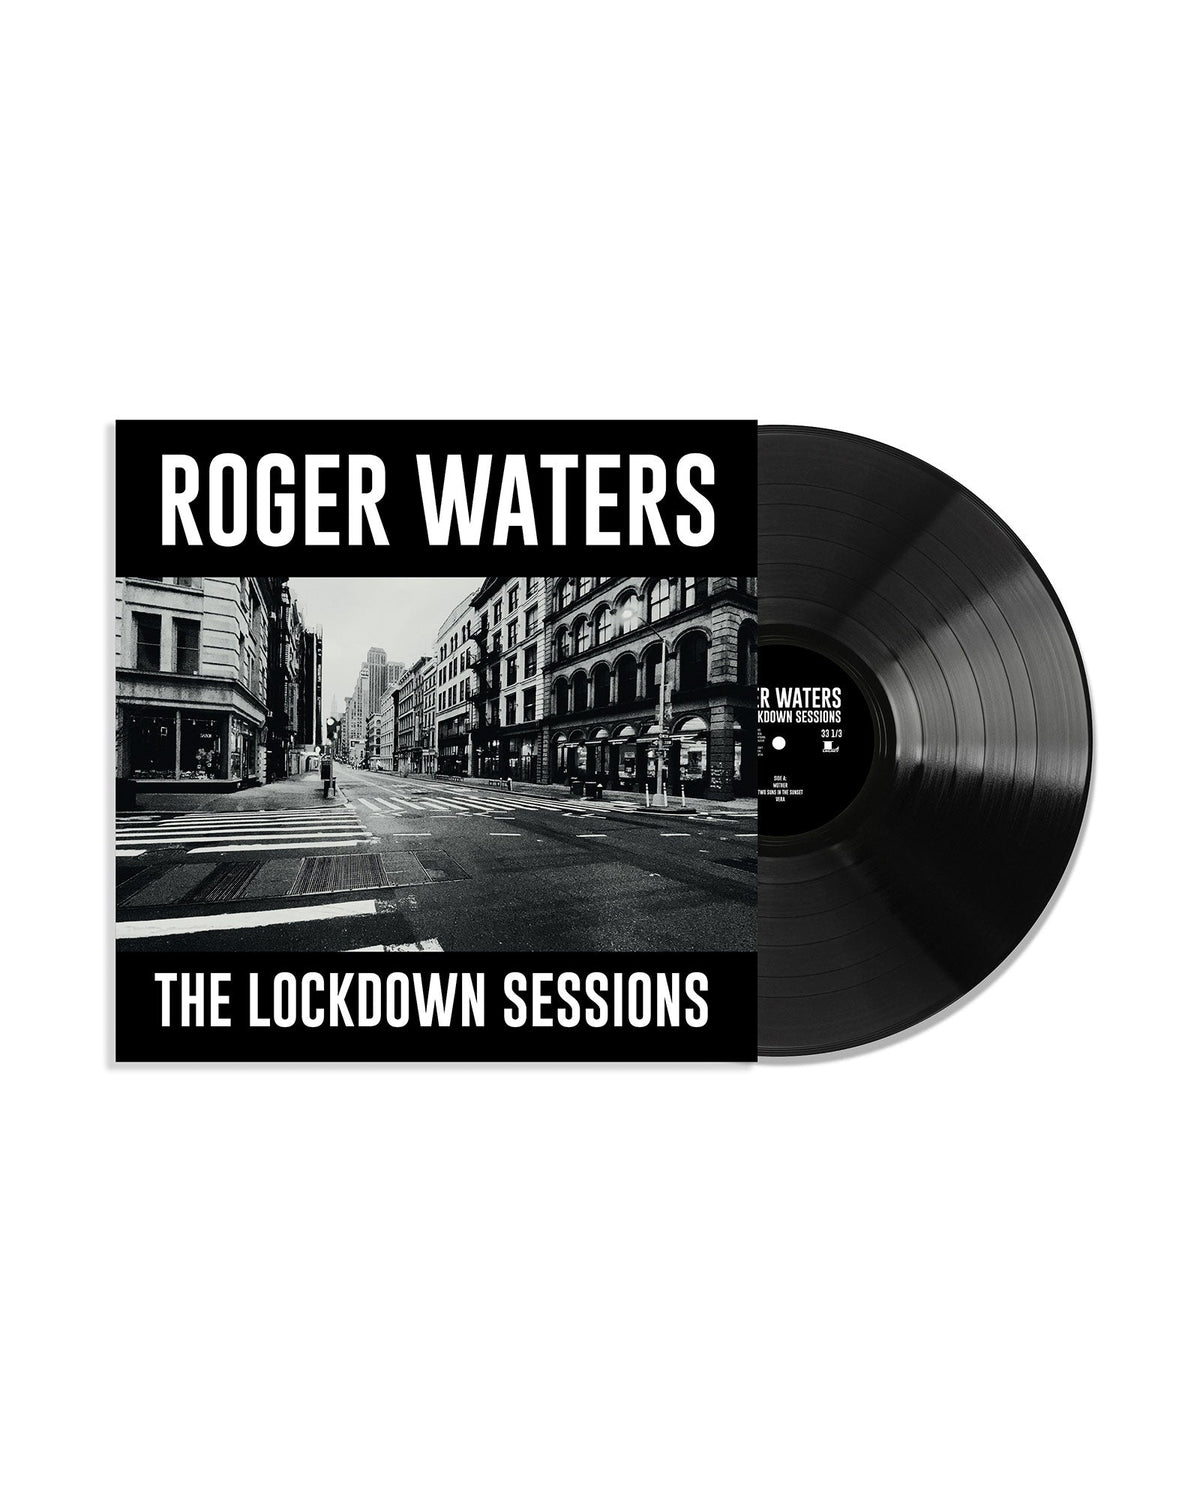 Roger Waters - LP Vinilo "The Lockdown Sessions" - D2fy · Rocktud - Rocktud